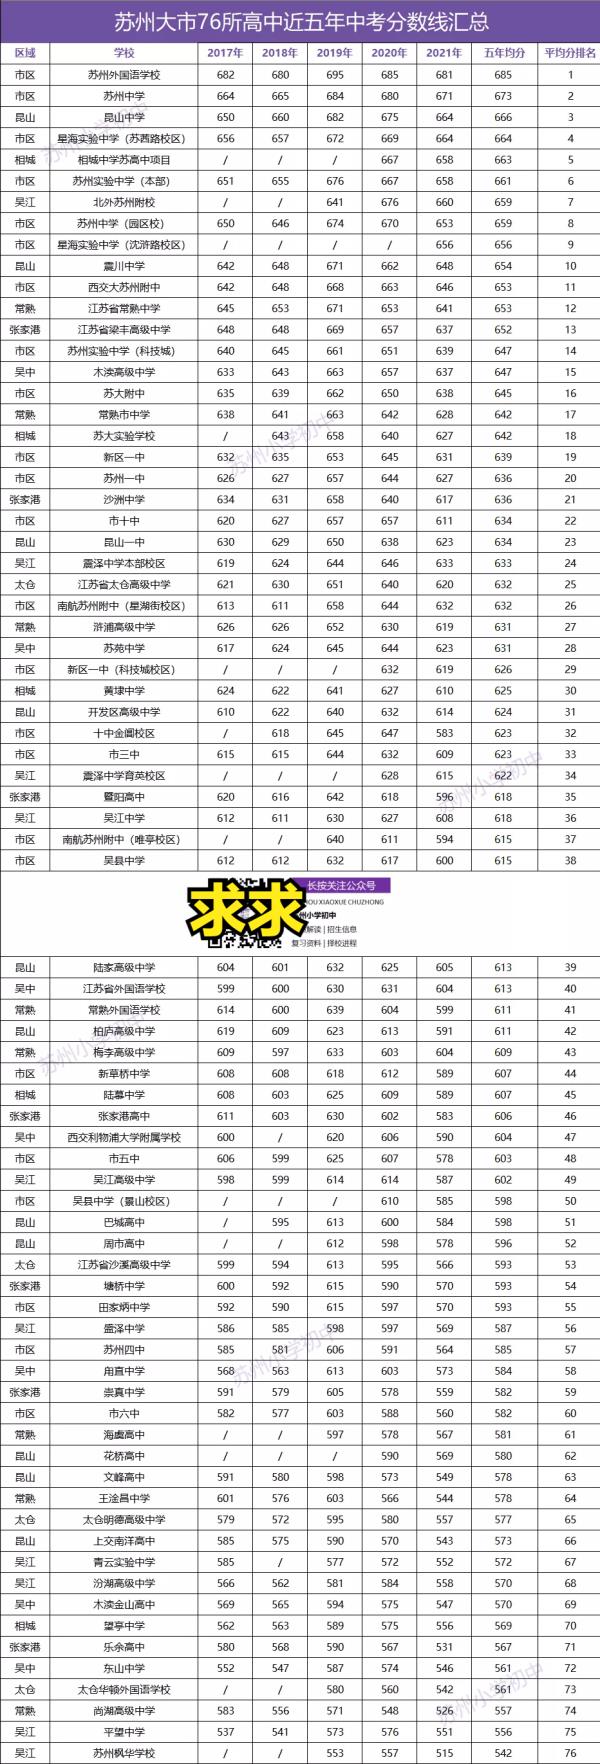 江苏高中成绩排名前50的学校